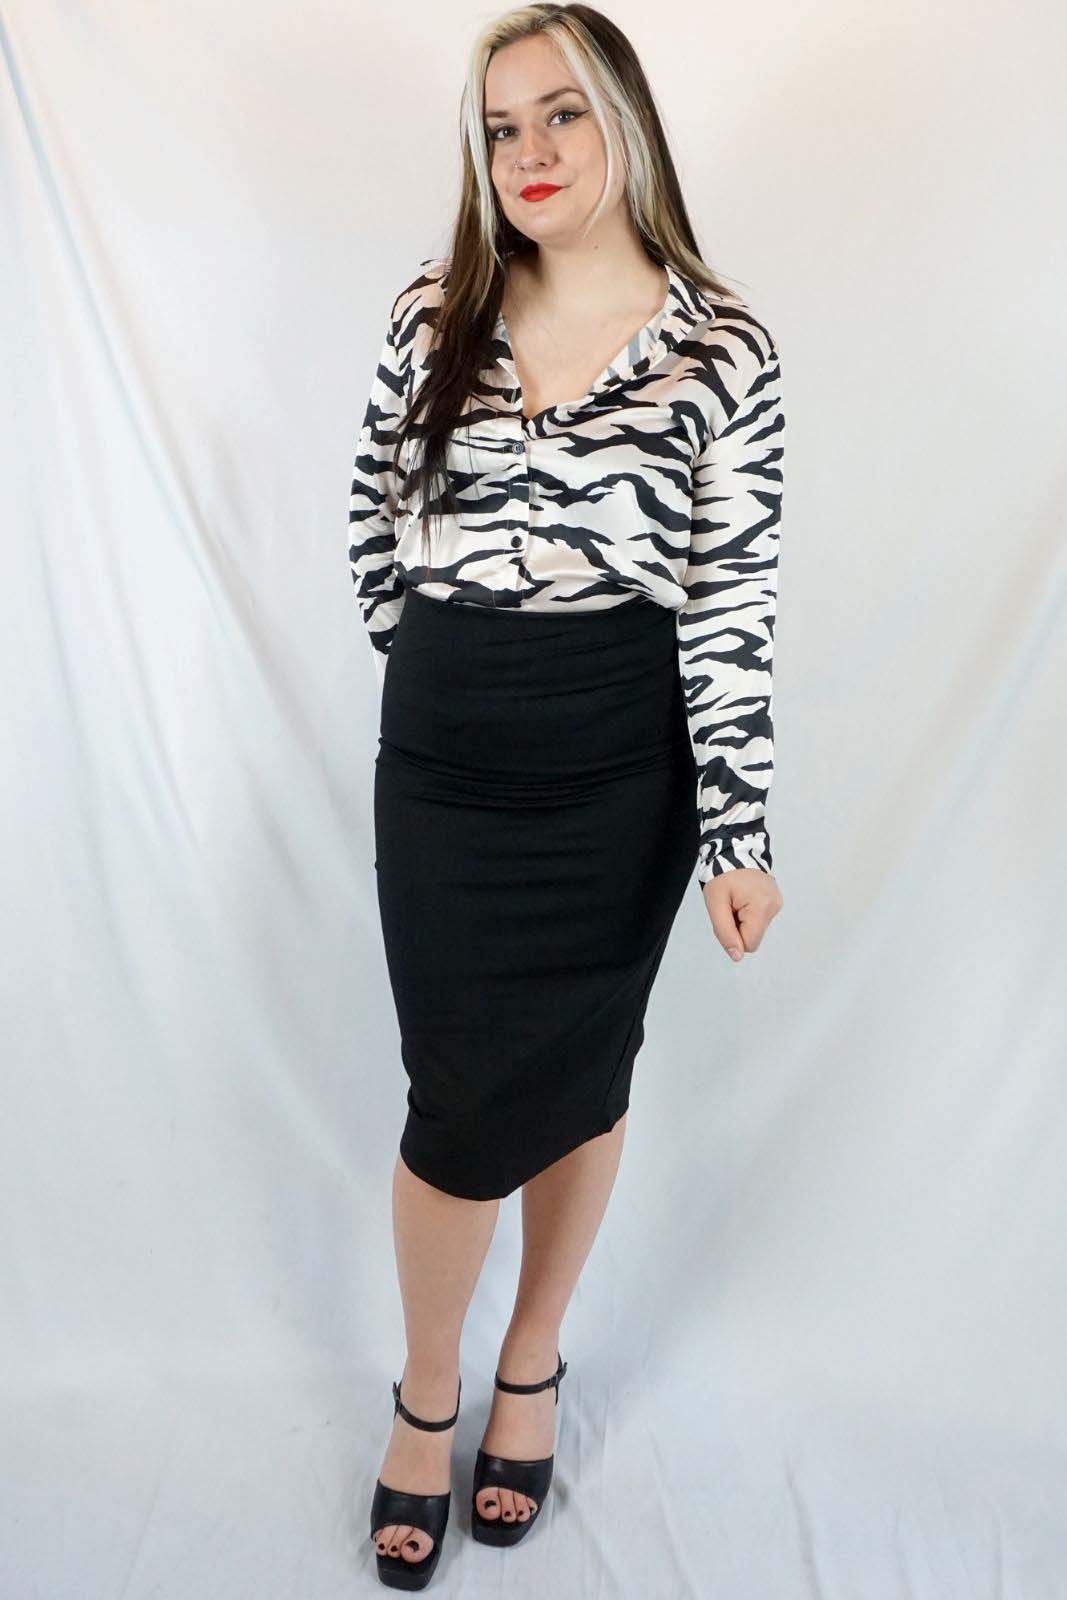 Black Pencil Skirt Zebra Blouse